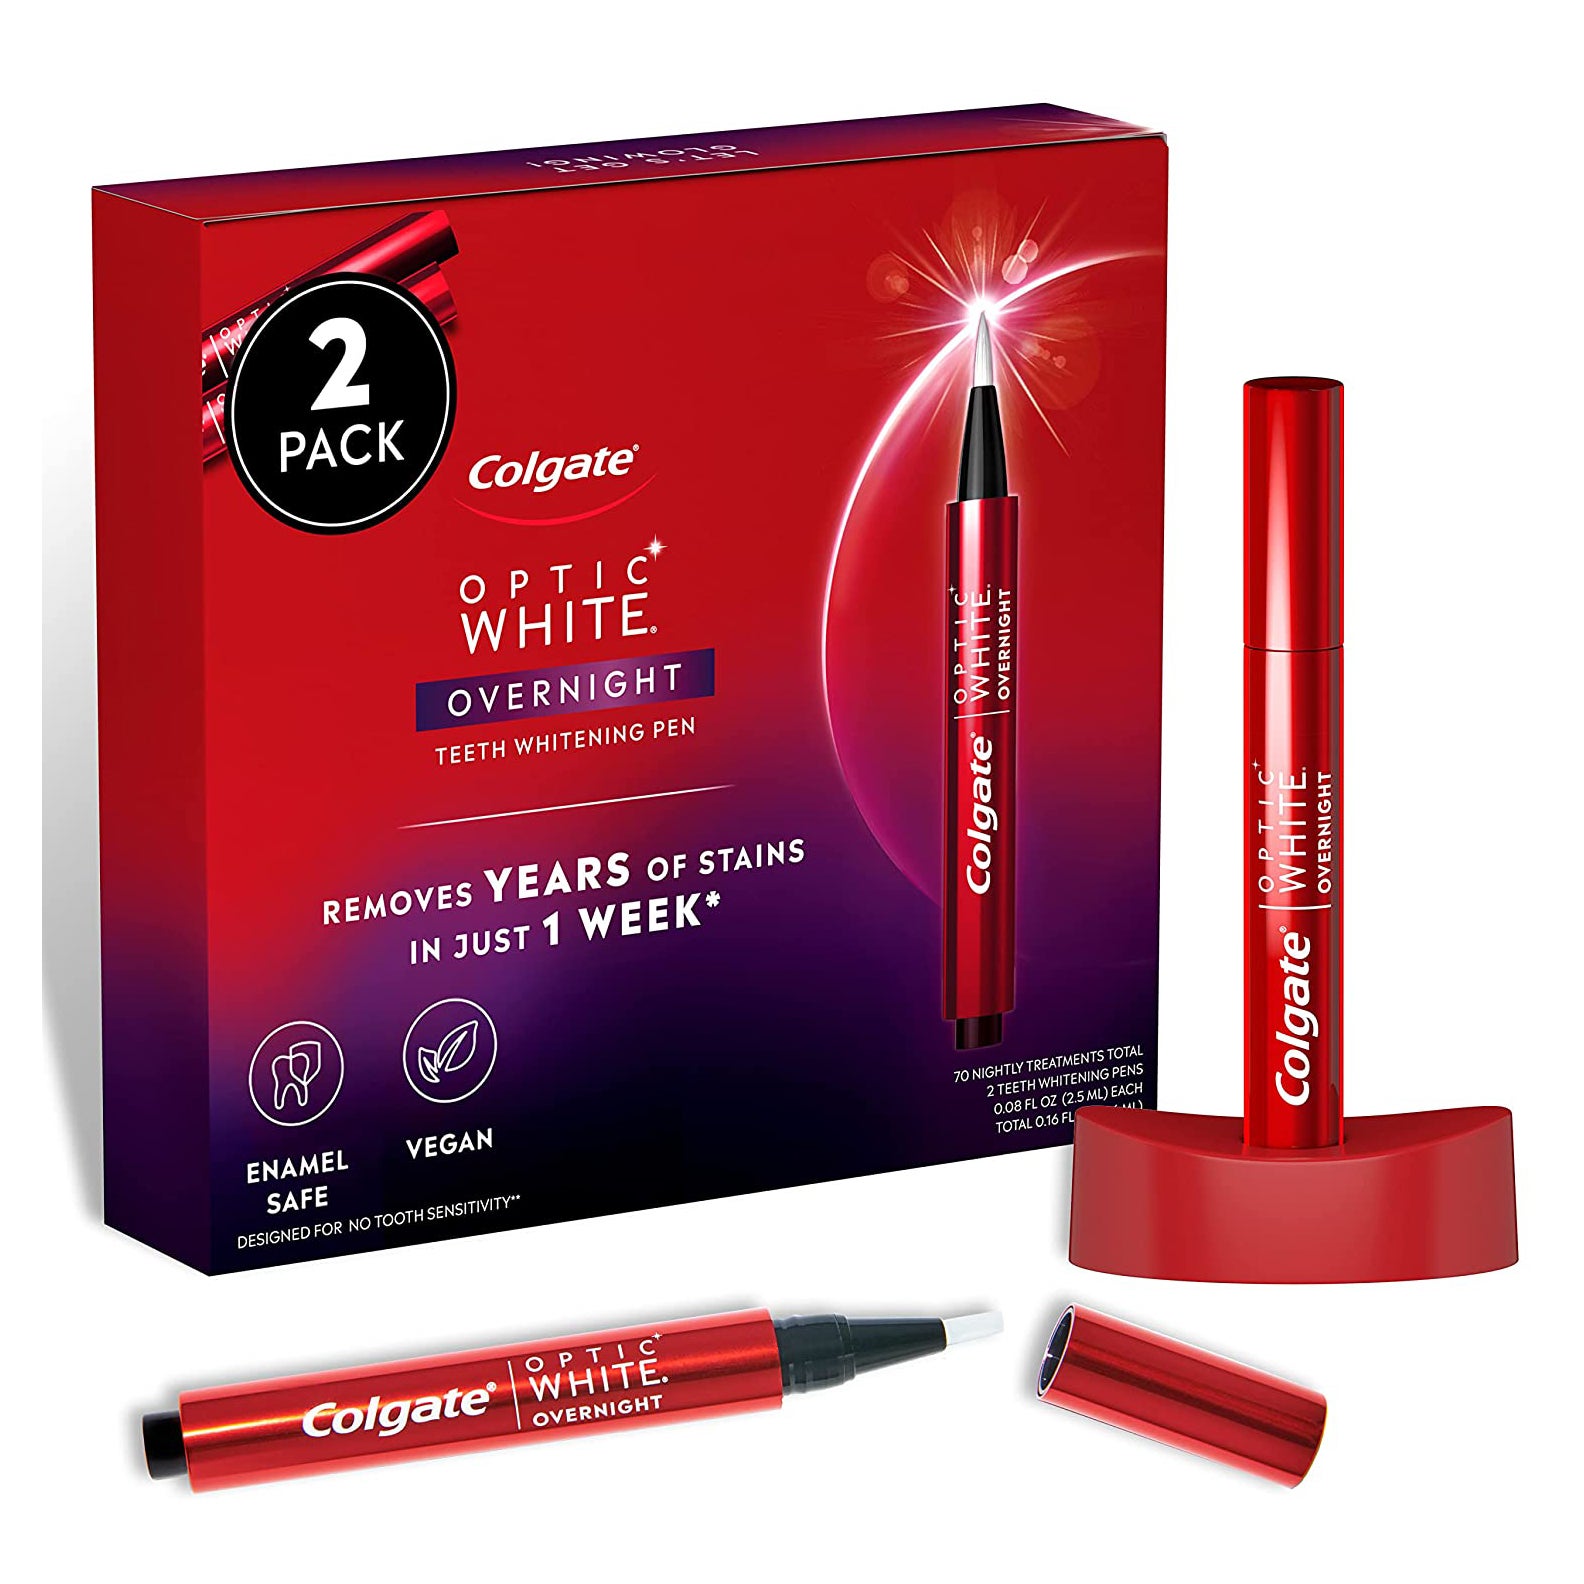 Colgate Optic White Overnight Teeth Whitening Pen 2-Pack